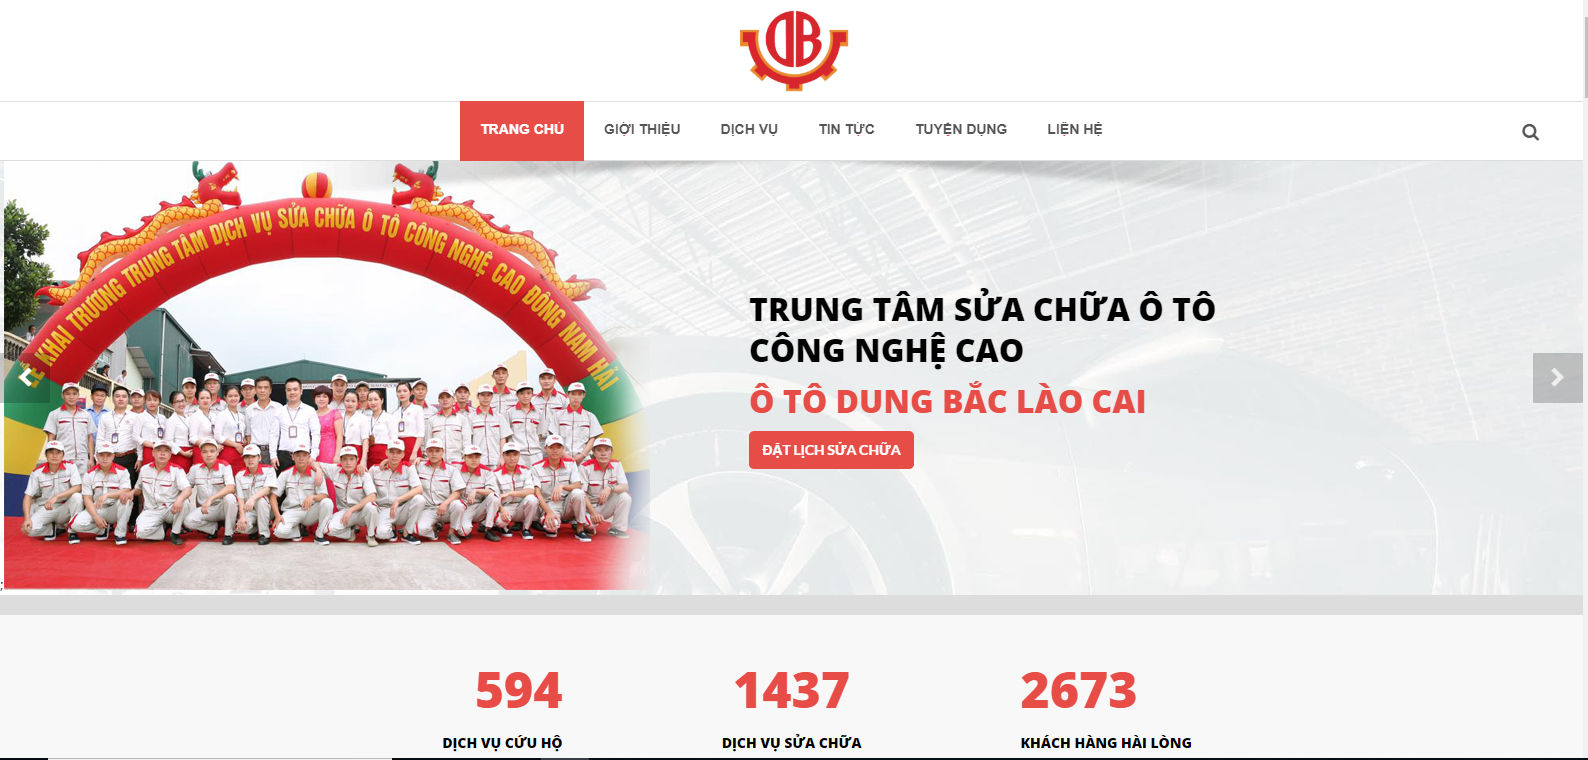 Vast Media thiết kế website Trung Tâm sửa chữa ô tô Dung Bắc